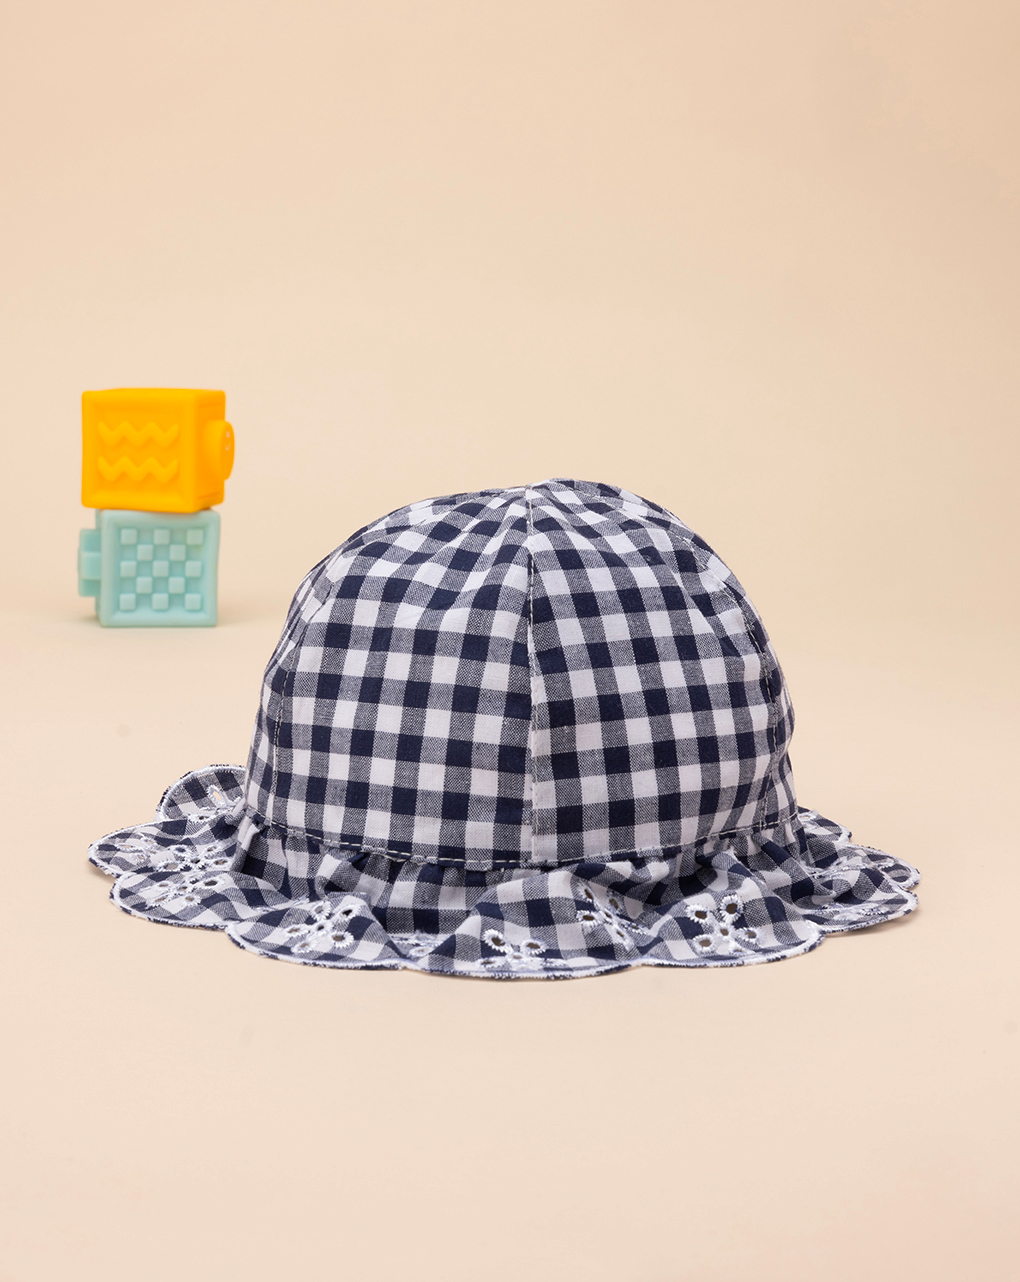 βρεφικό καπέλο καρό μπλε/λευκό για κορίτσι